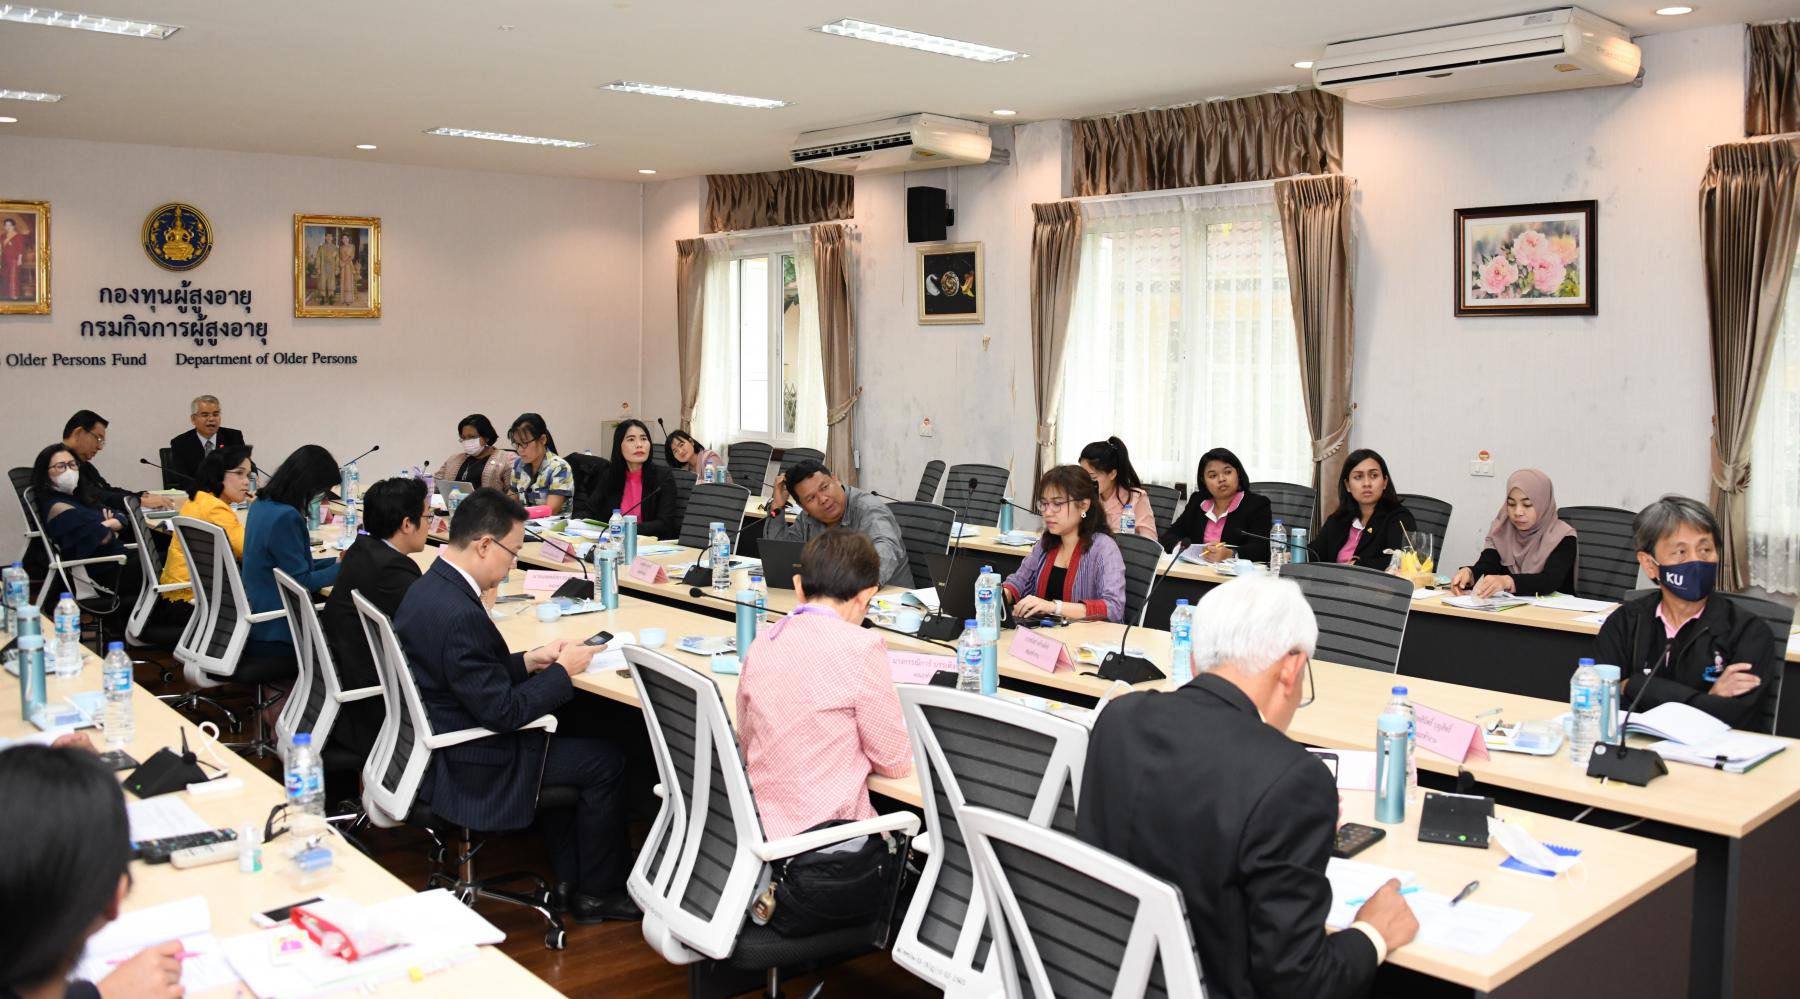 ประชุมคณะทำงานจัดทำกฎหมายรองรับสังคมสูงวัยคนไทยอายุยืน ครั้งที่ 4/2563 